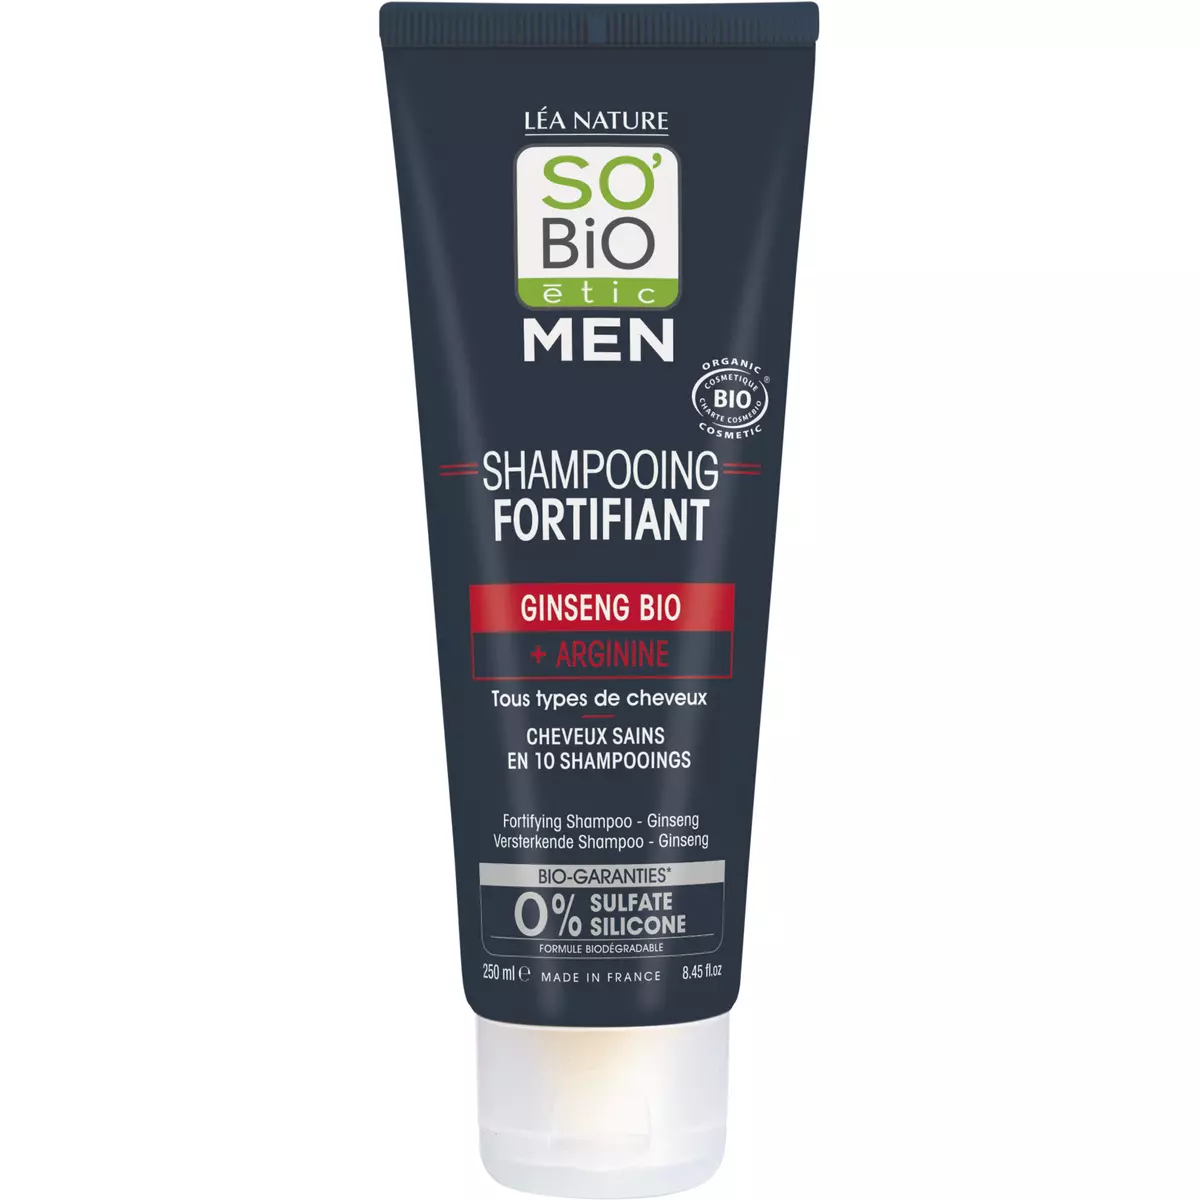 SO BIO ETIC Men shampooing fortifiant ginseng bio et arginine tous types de cheveux 250ml